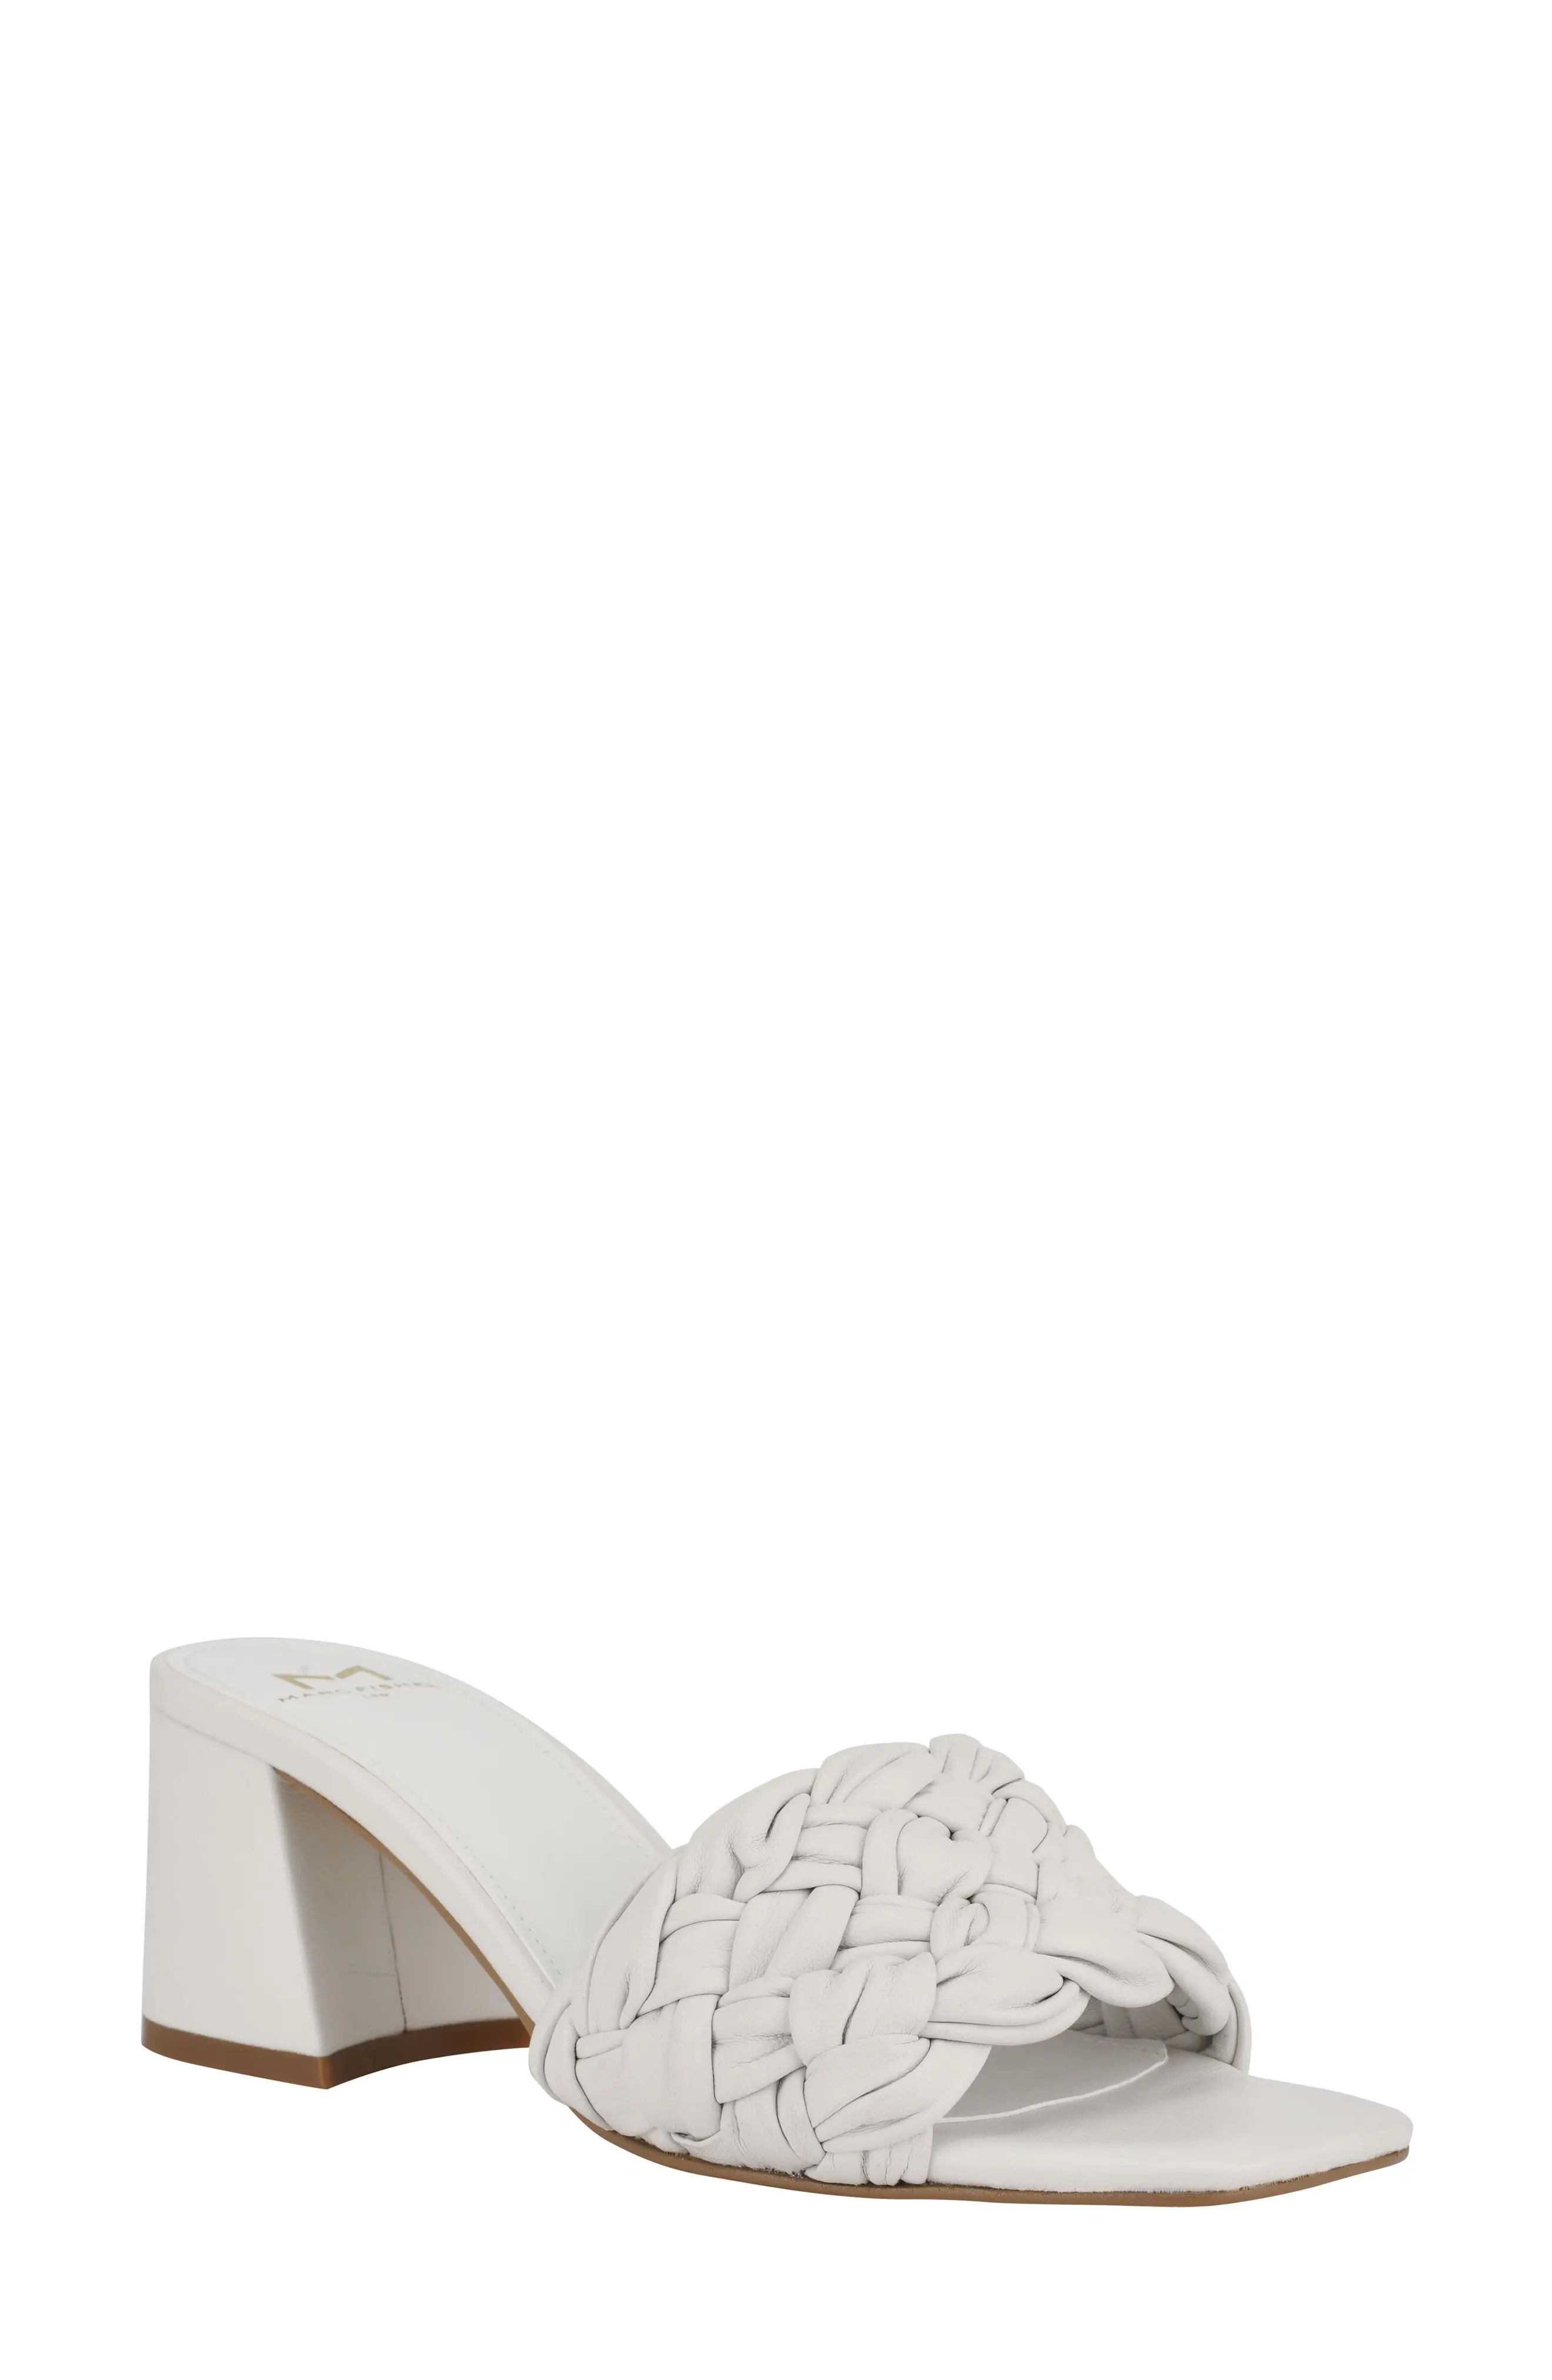 Women's Marc Fisher Ltd Nahea Slide Sandal, Size 8 M - White | Nordstrom